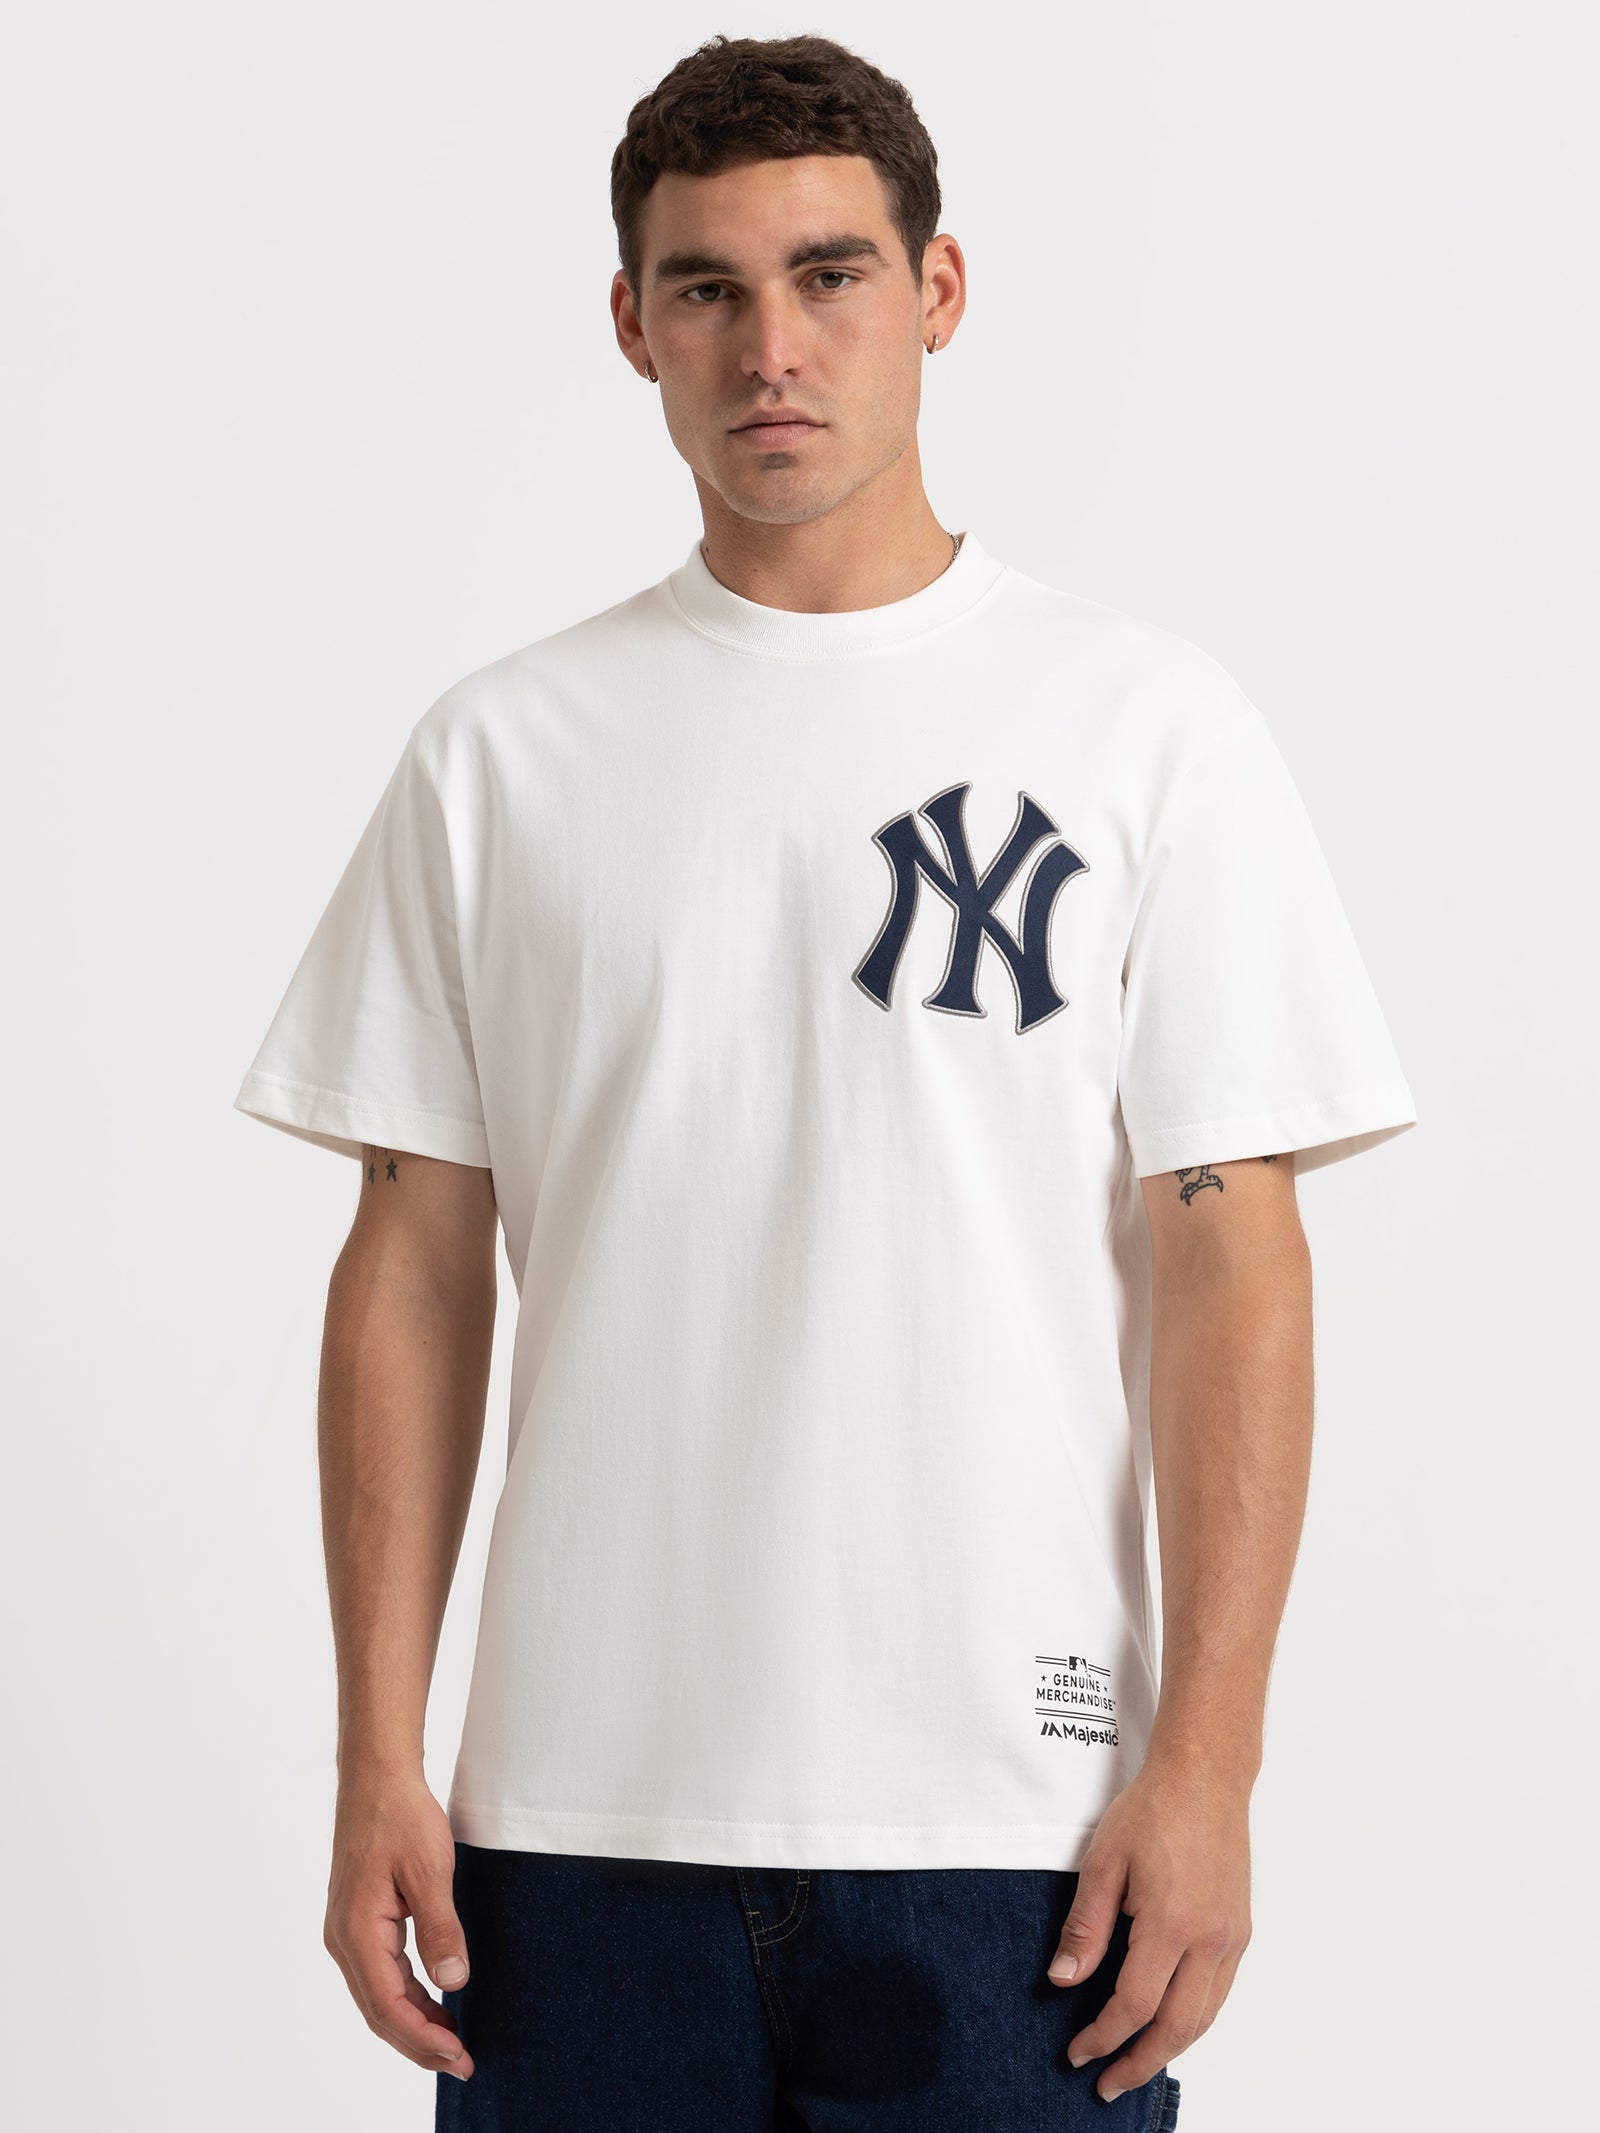 New Era - New York Yankees MLB Retro Graphic Oversized T-Shirt - Wh